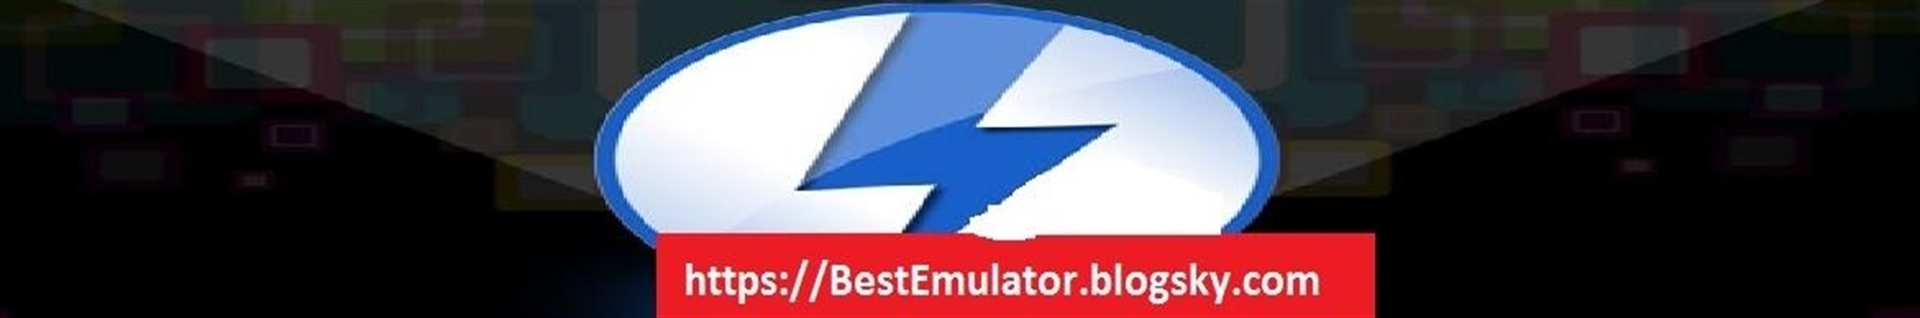 کانال بهترین شبیه سازهای کنسولی Best Emulator